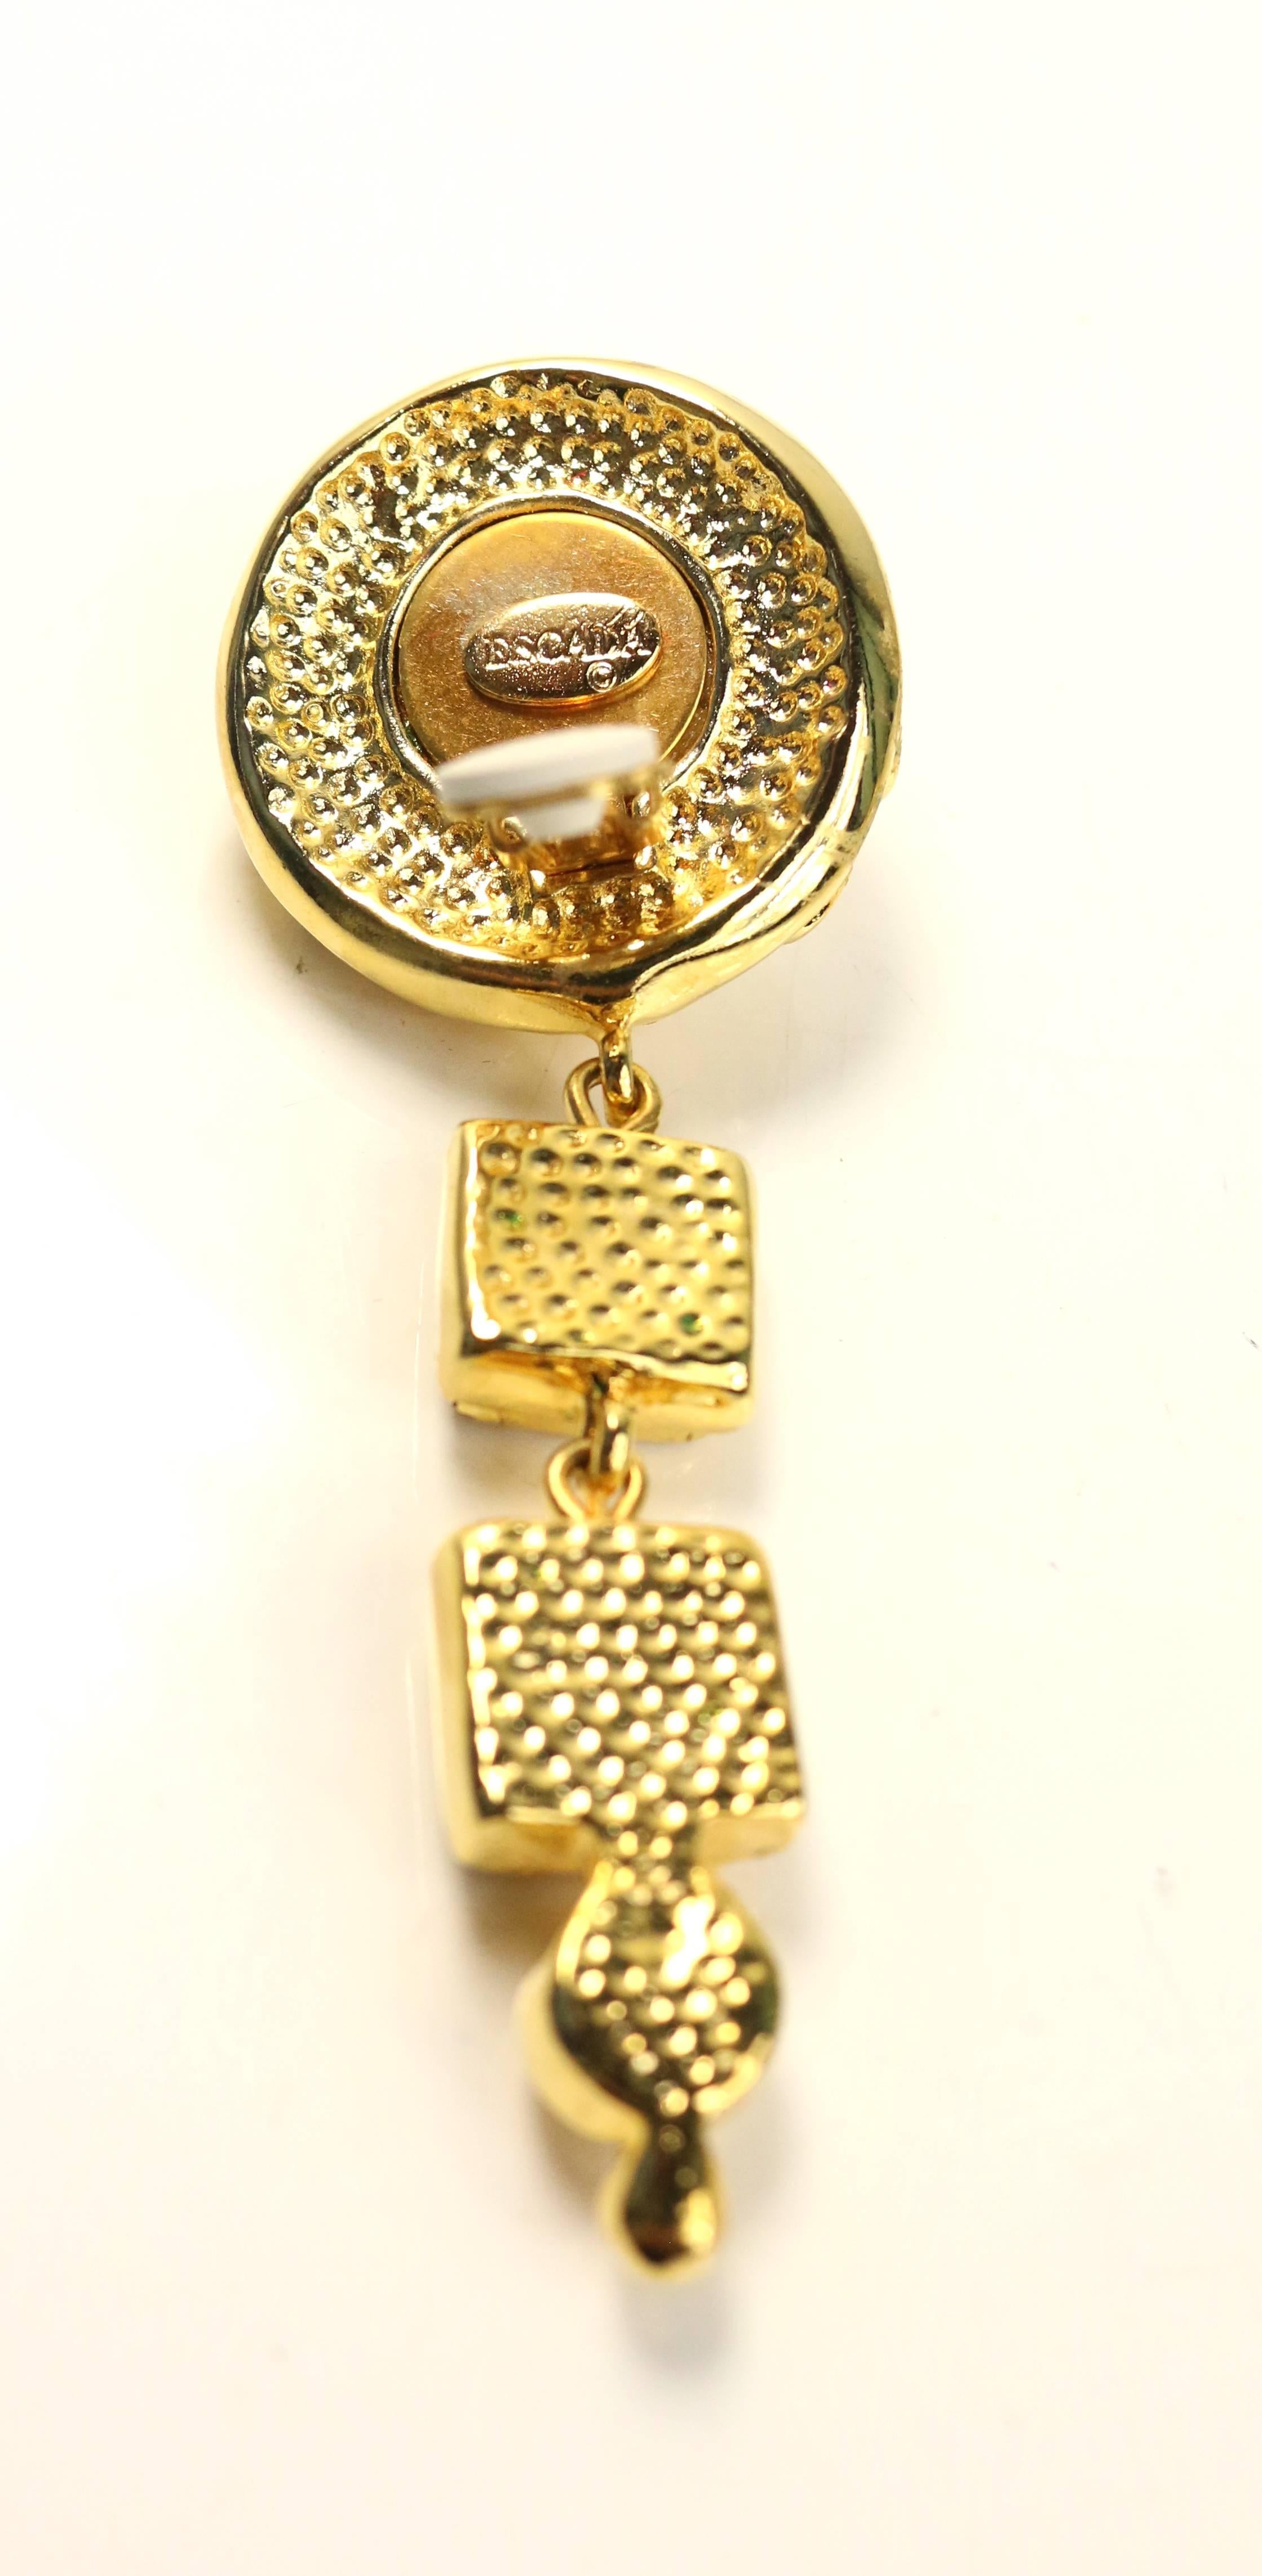 - Boucles d'oreilles clip Escada vintage des années 80 avec strass sertis en or. 

- Les strass ronds à monture dorée sont attachés à quelques gouttes de strass carrés à monture dorée. 

- Hauteur : 3 pouces. Crampons ronds : 1.5 de diamètre.